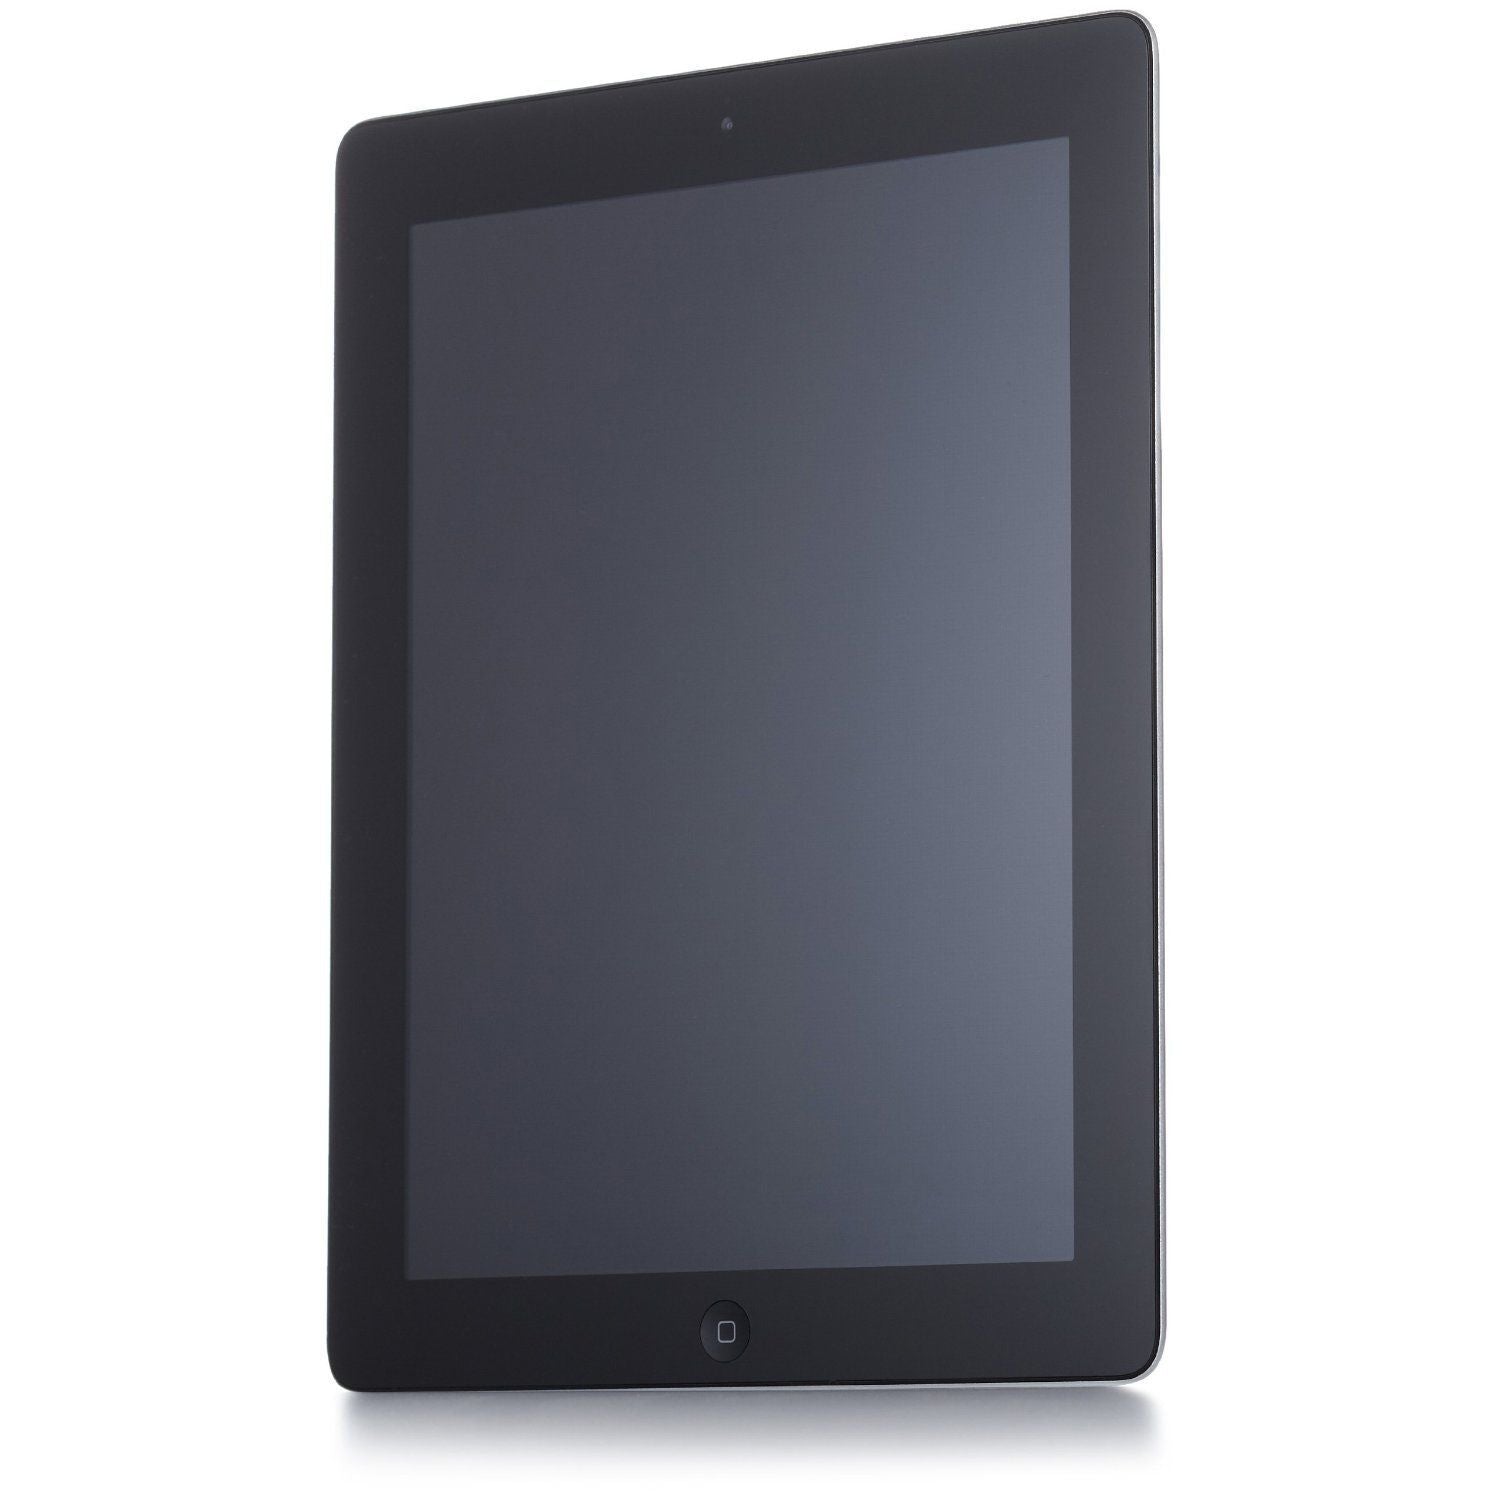 Apple iPad 2 (2011), 9.7", MC769LL/A, Wi-Fi, 16GB, Black - Refurbished Good